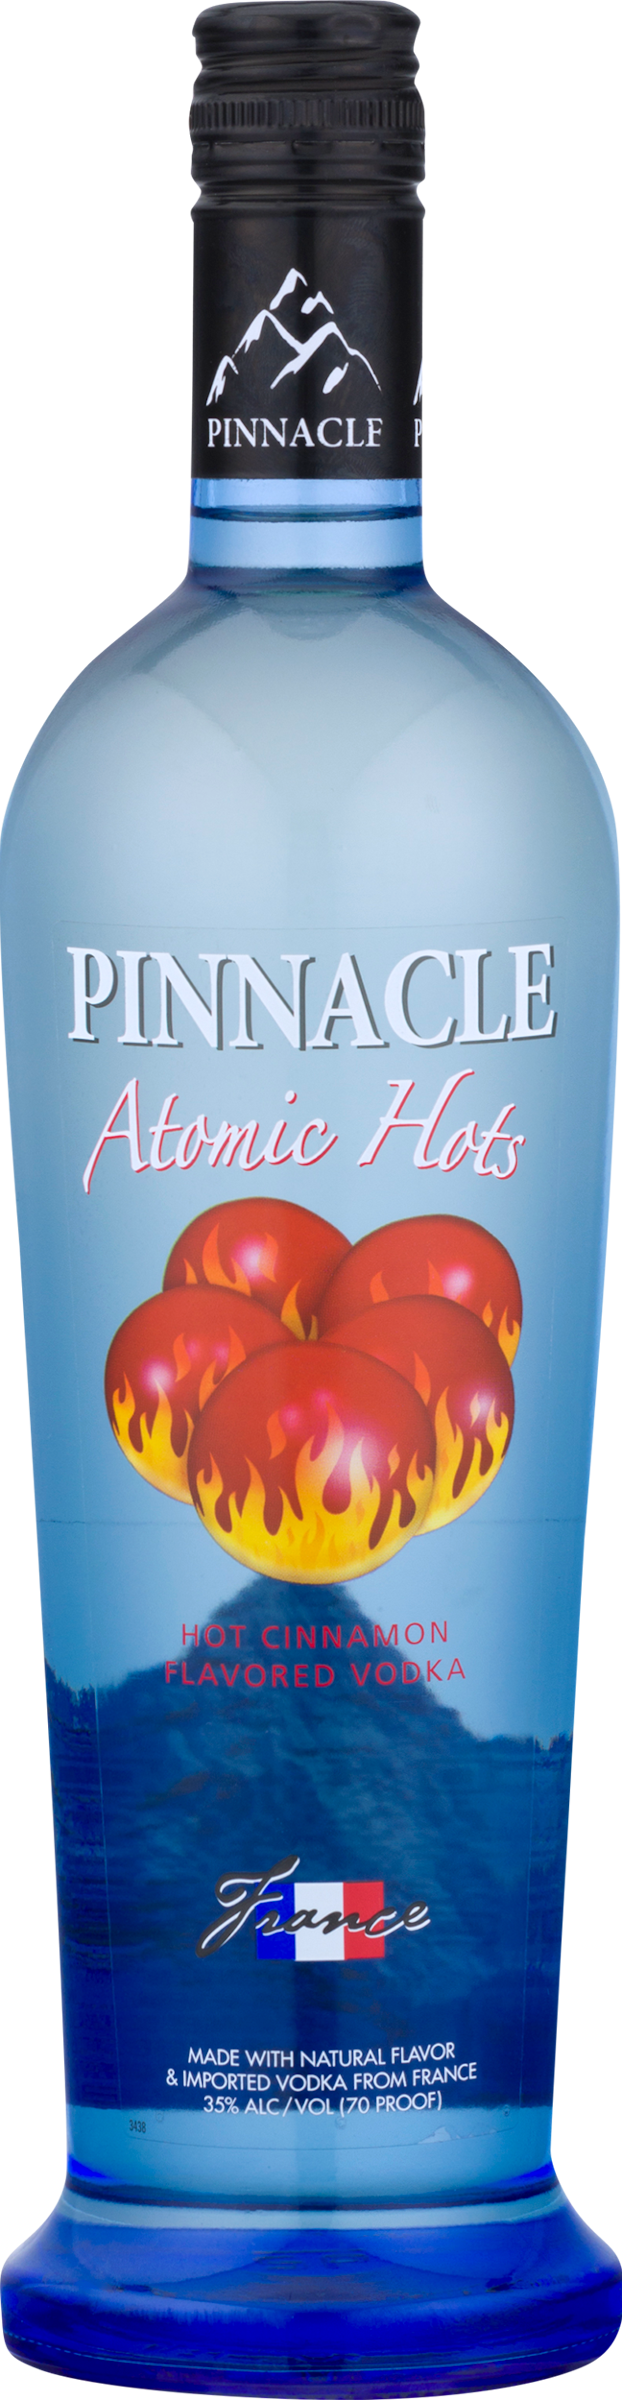 Bottle of Pinnacle® Atomic Hot Vodka
